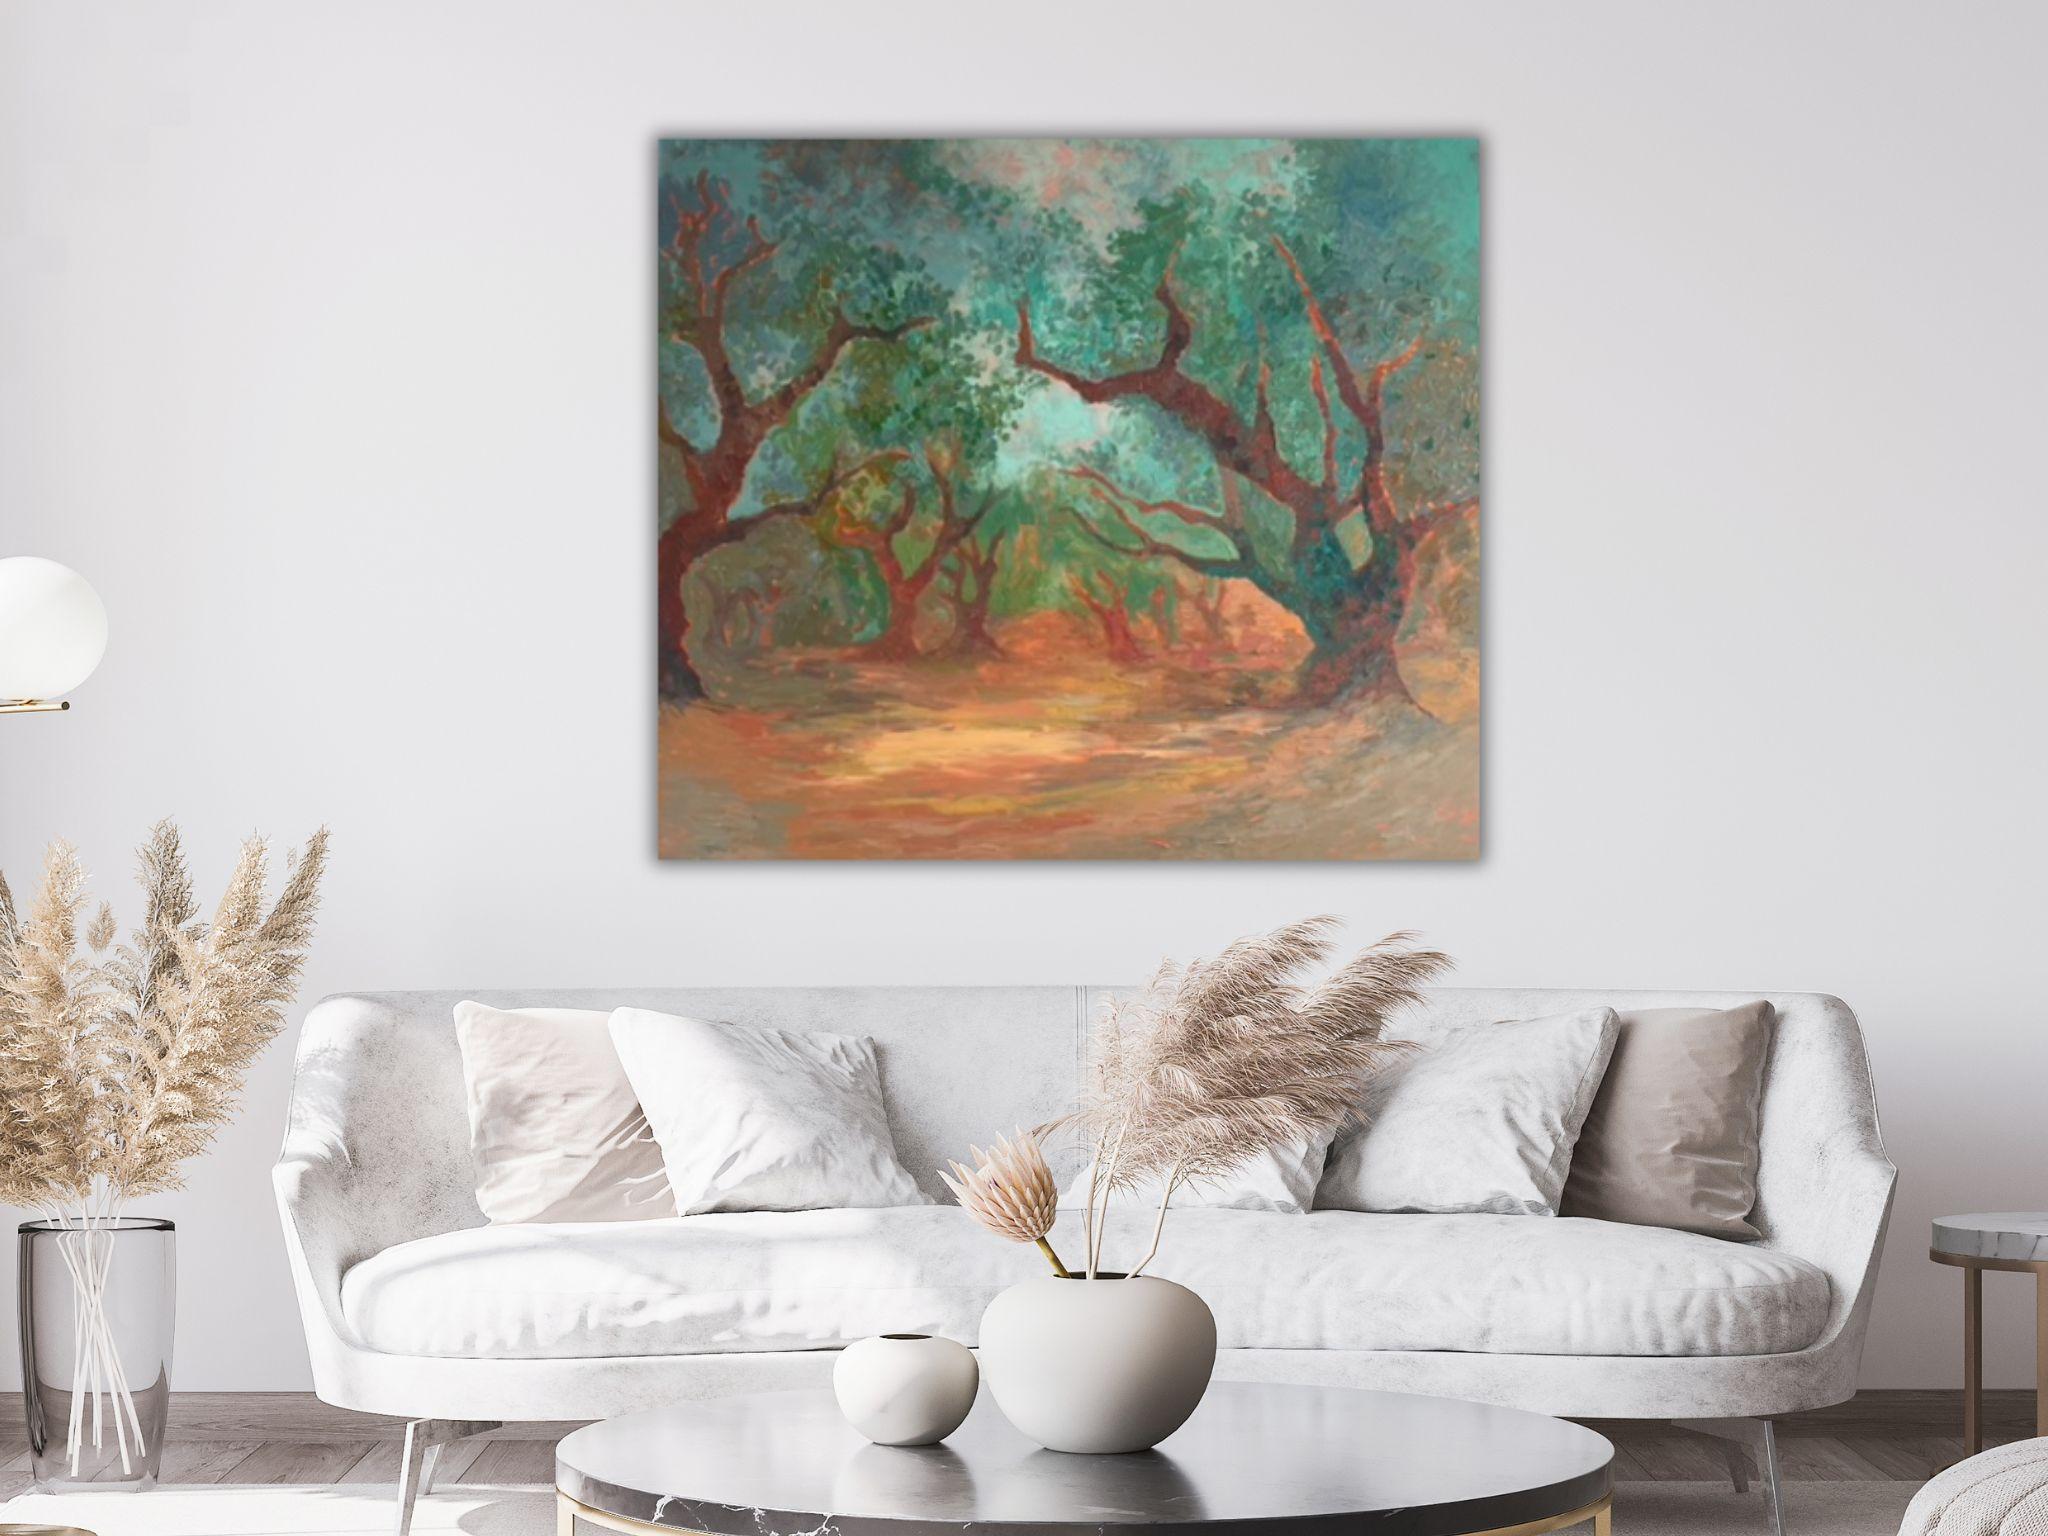 Landschaftsgemälde - SECRET GARDEN, Öl auf Leinwand - 40*32 in (100*80cm) (Impressionismus), Painting, von Dasha Pogodina